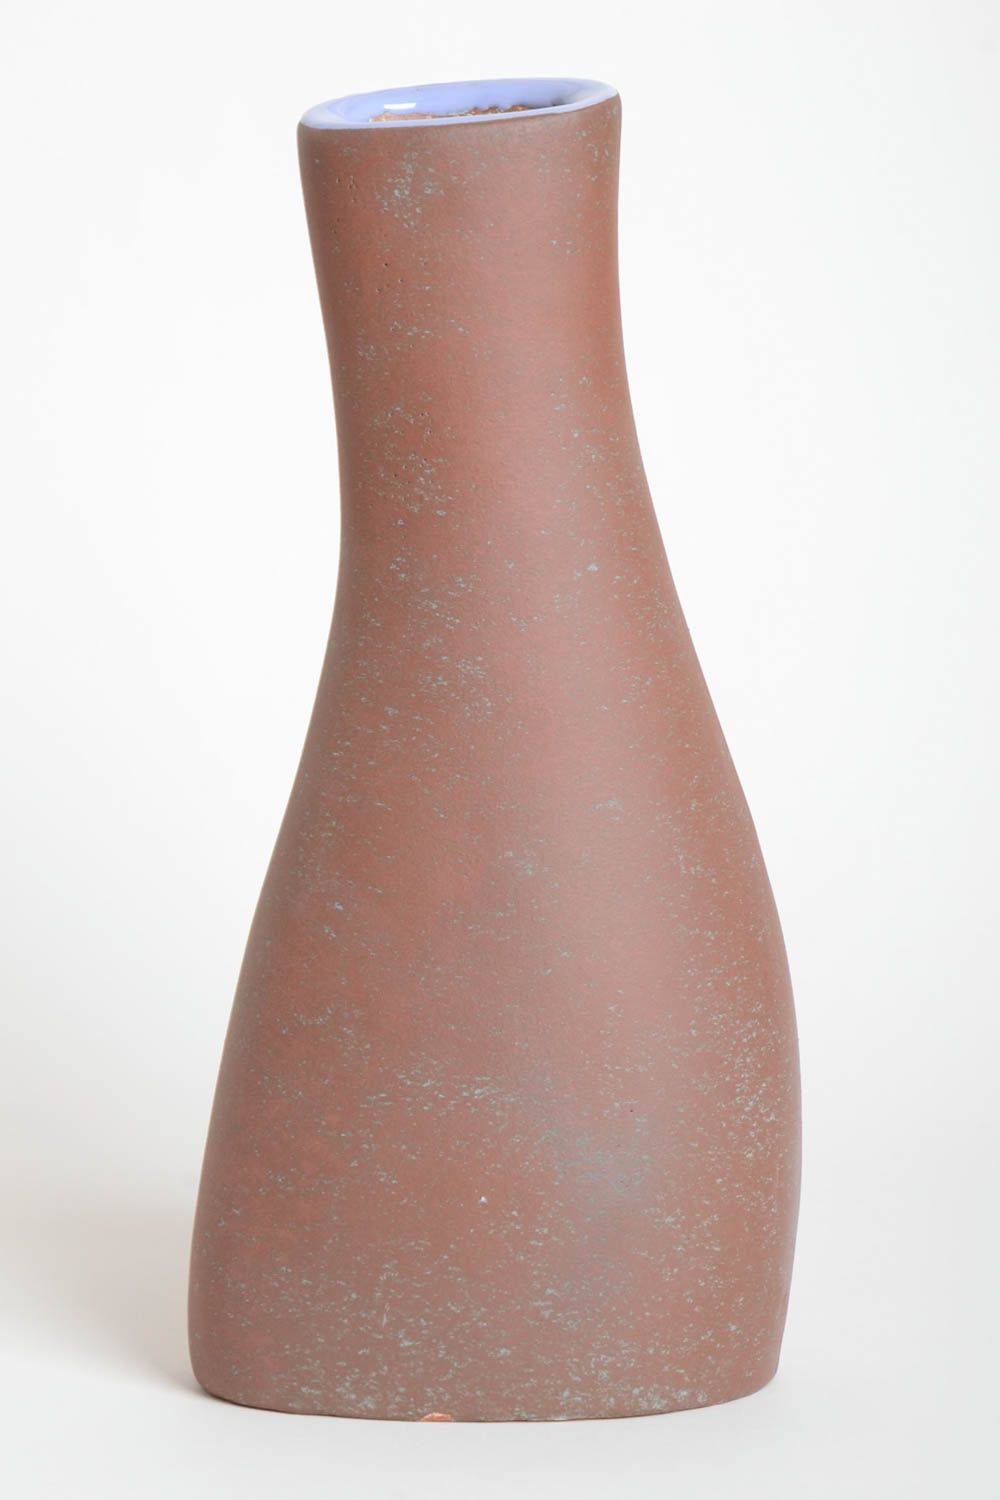 Сувенир ручной работы ваза для цветов эксклюзивный предмет интерьера фантастика фото 4